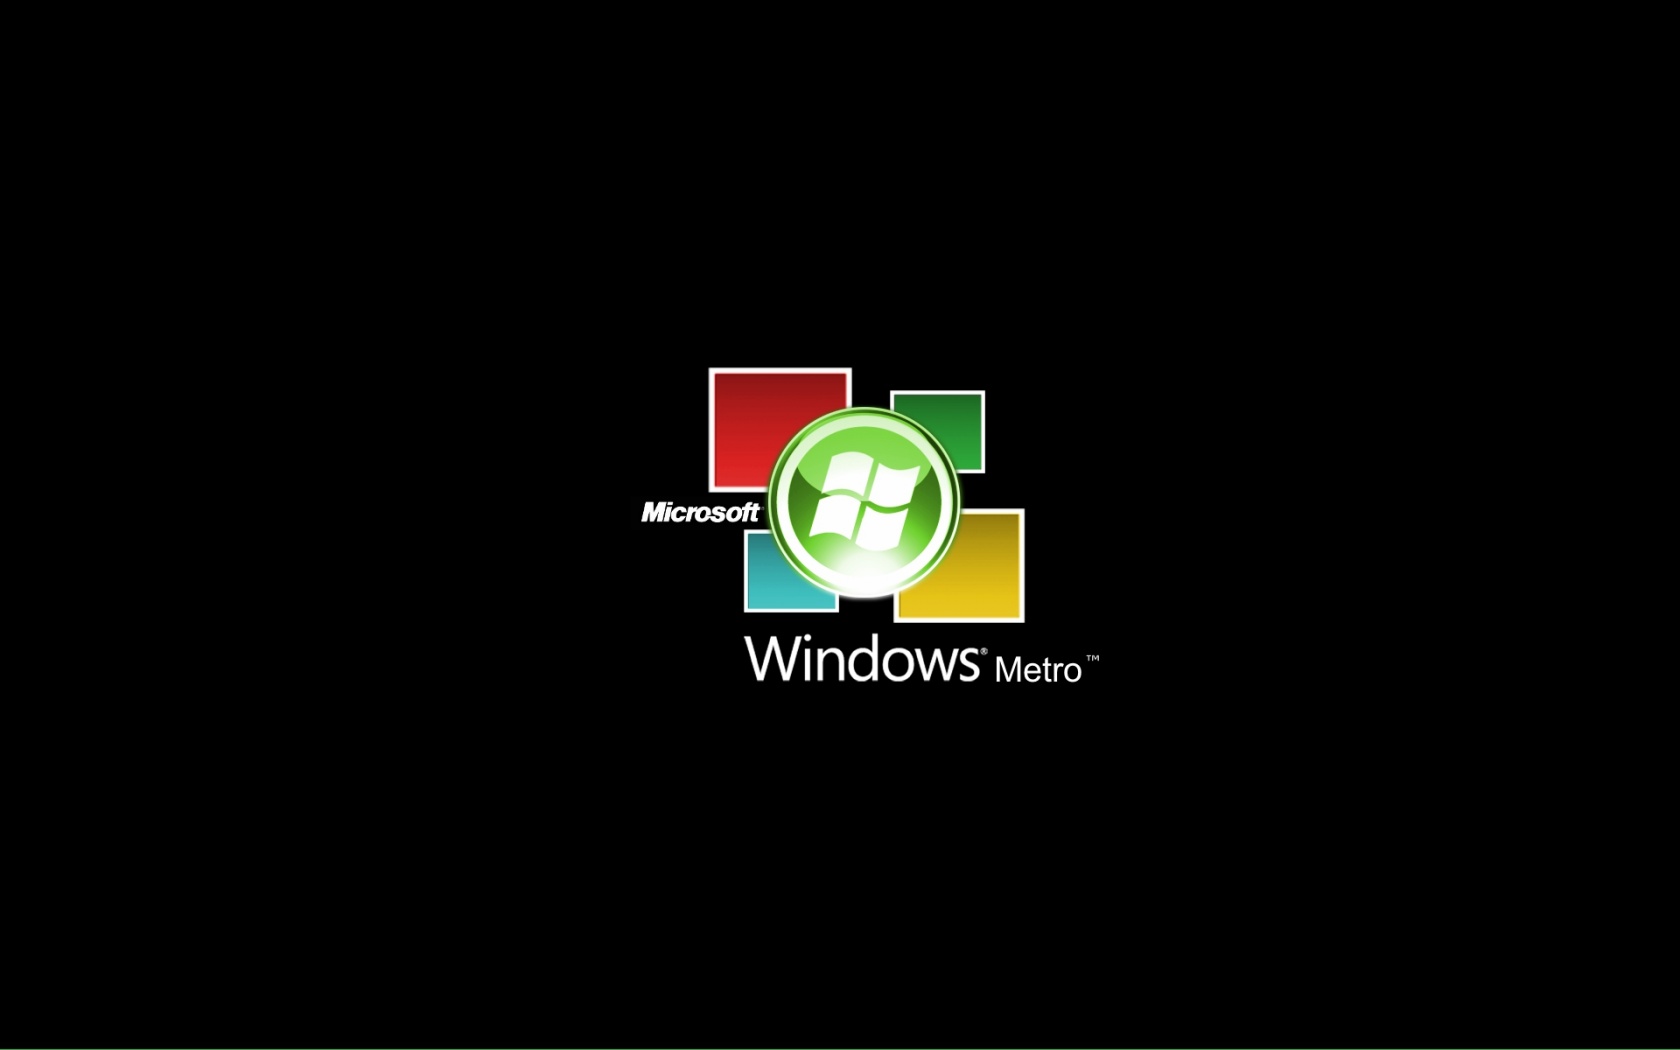 Windows Metro Logo Desktop Pc And Mac Wallpaper